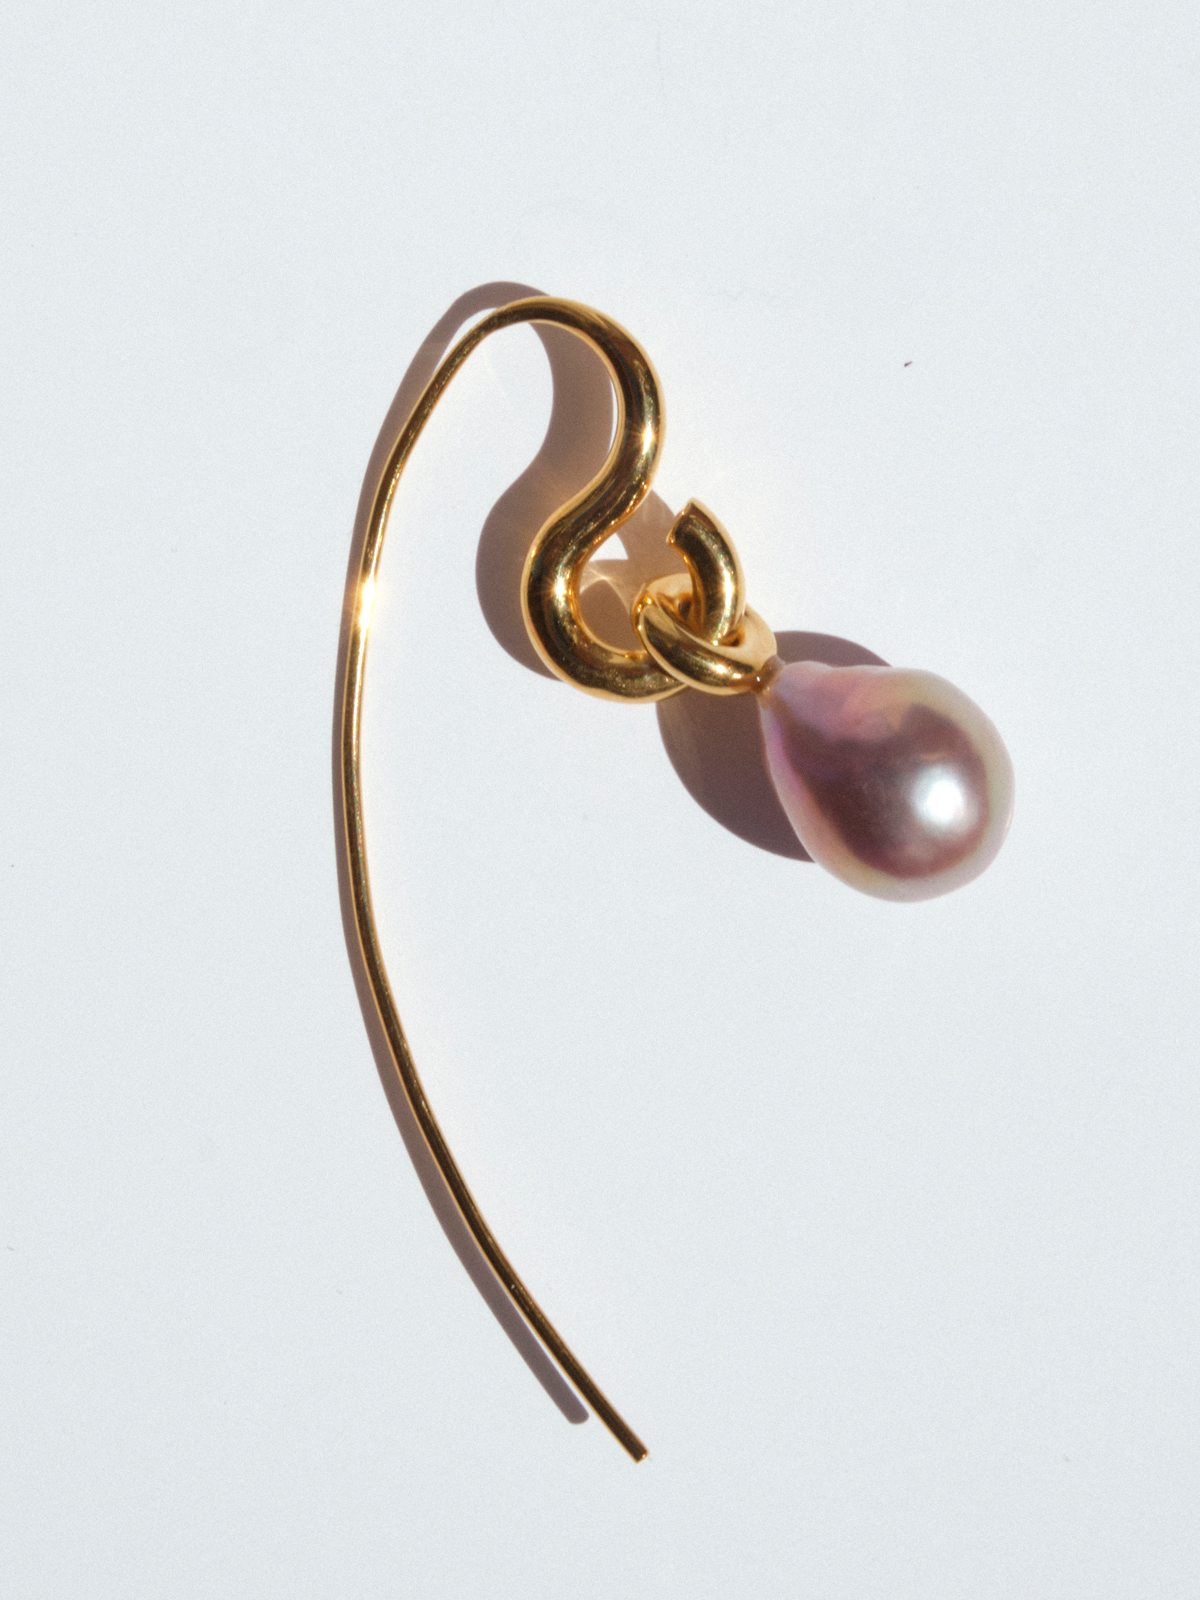 Charlotte Chesnais dévoile une collection de bijoux autour de la perle